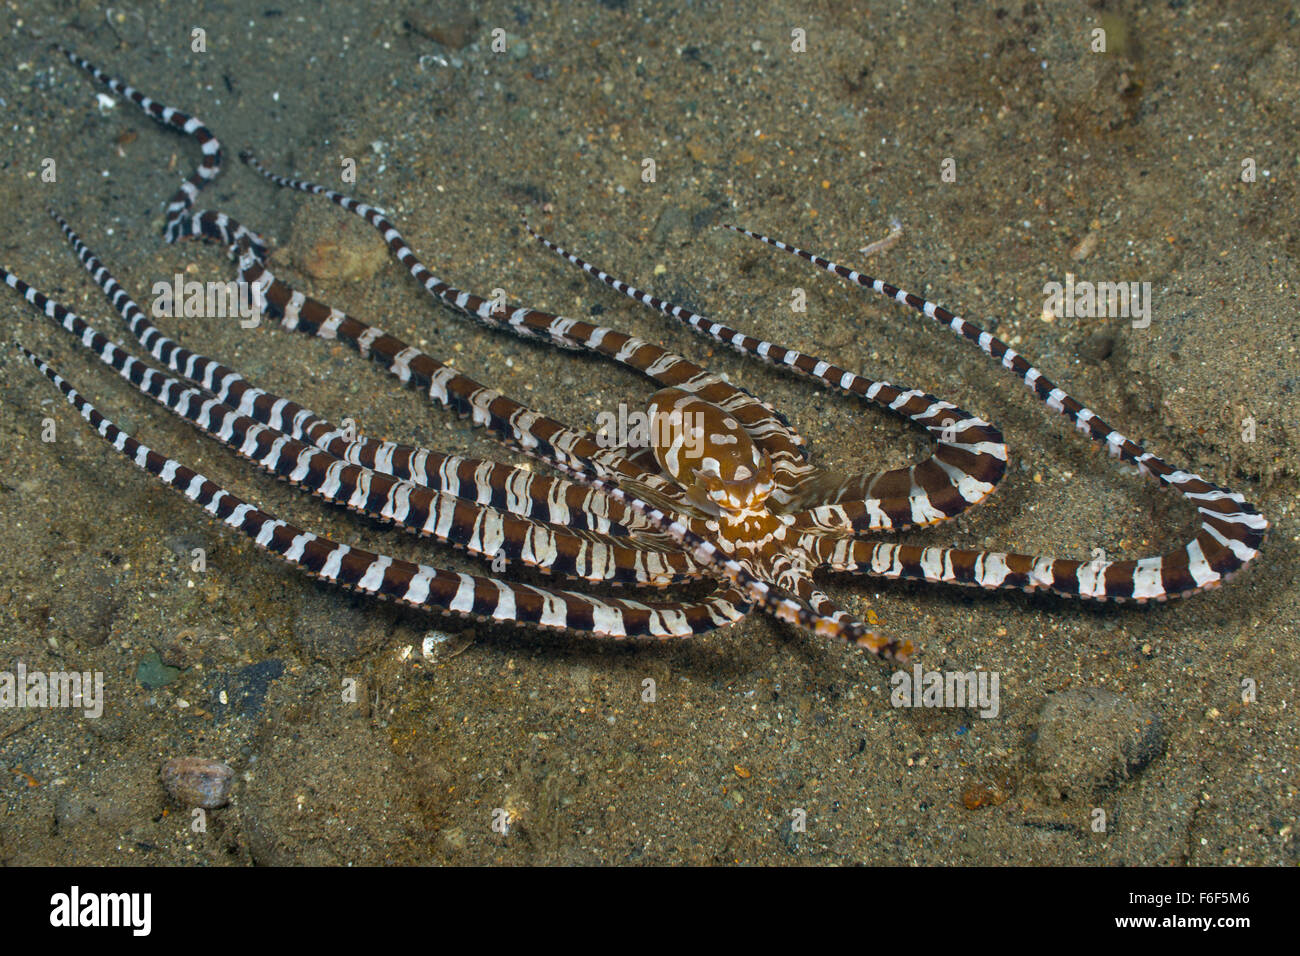 Wunderpus Octopus, Wunderpus photogenicus, Ambon, Indonesia Stock Photo